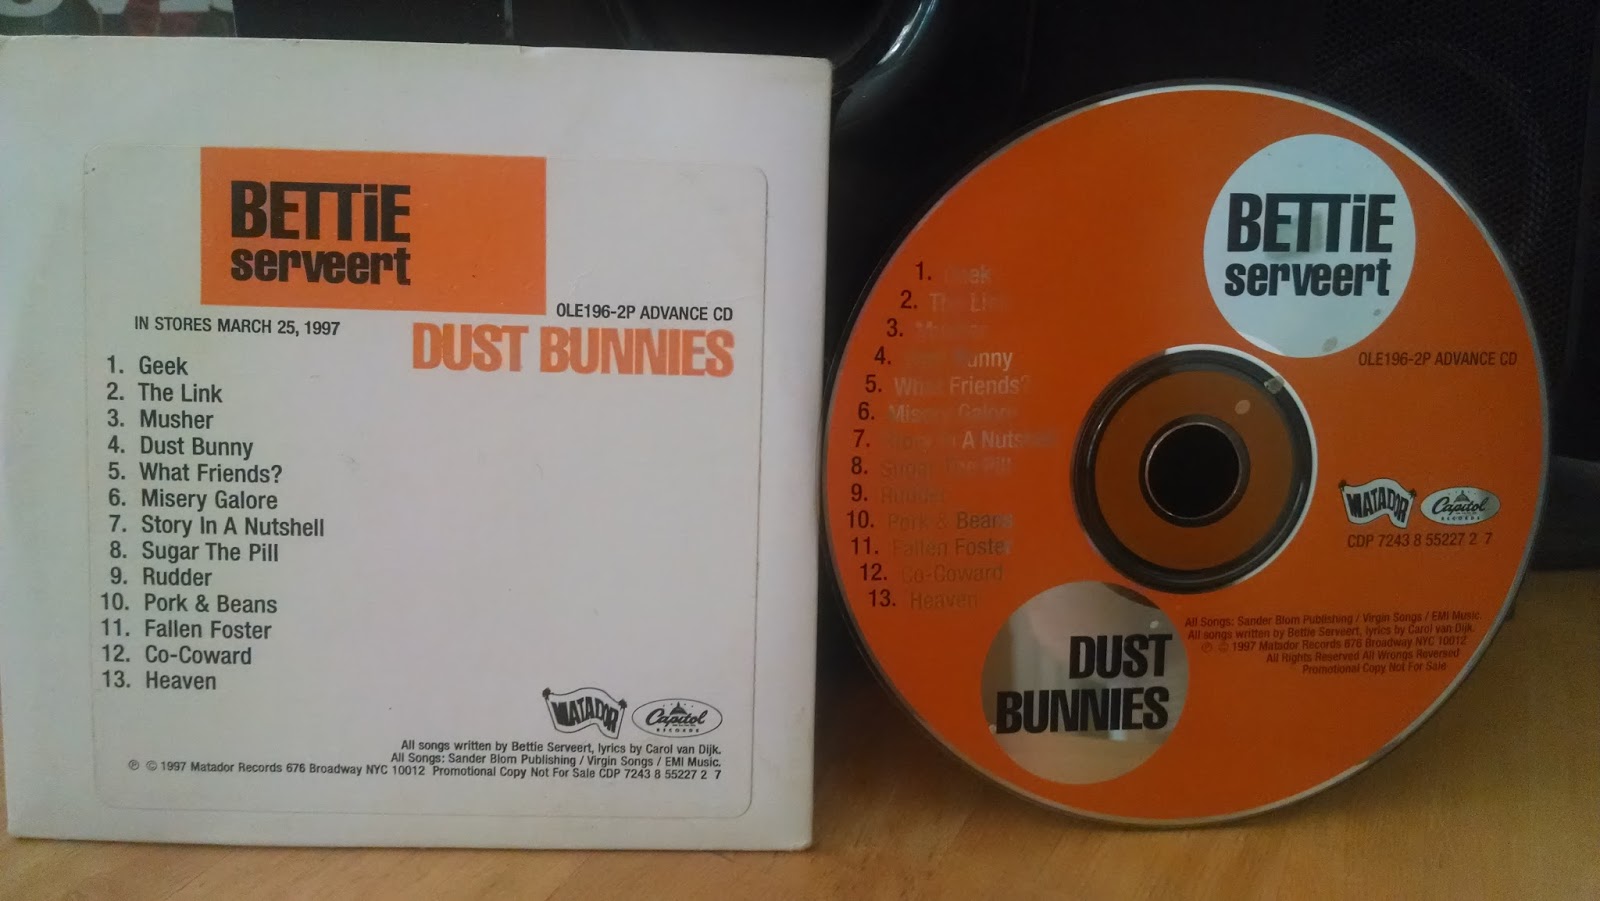 bettie serveert dust bunnies rar download